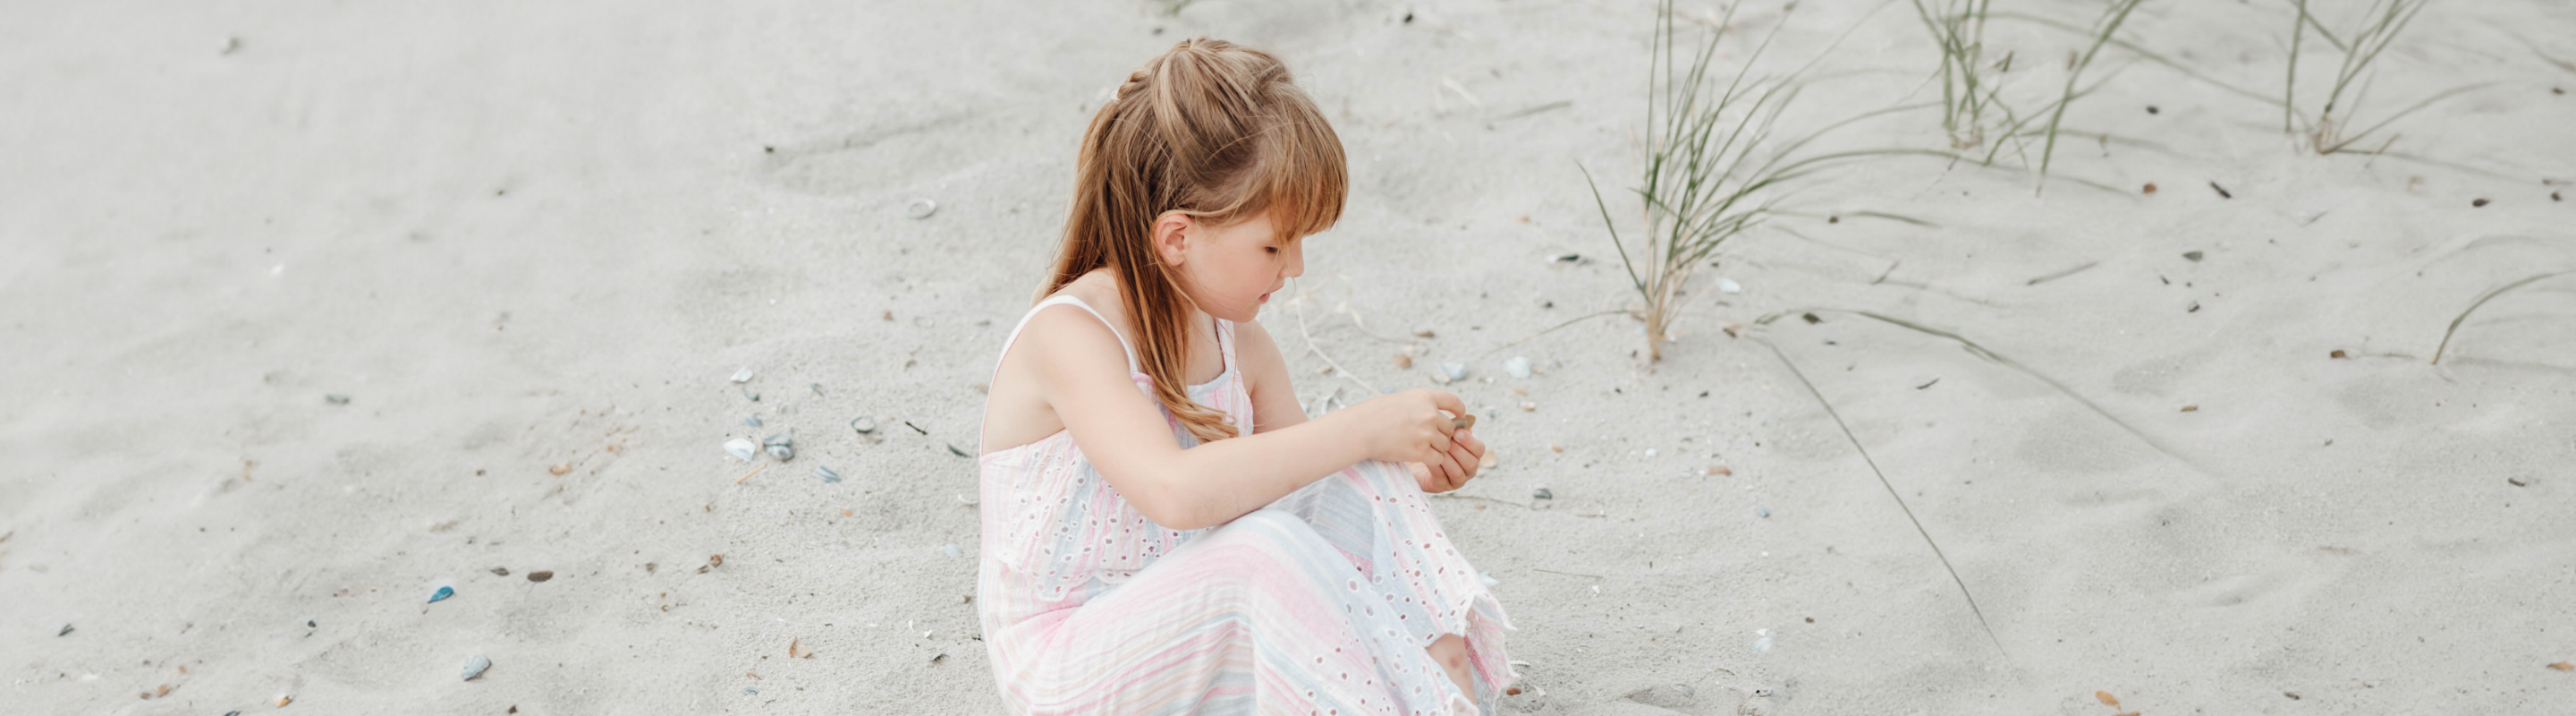 Geschenke für 6-jährige Mädchen: 10 Tipps für originelle Geschenke

